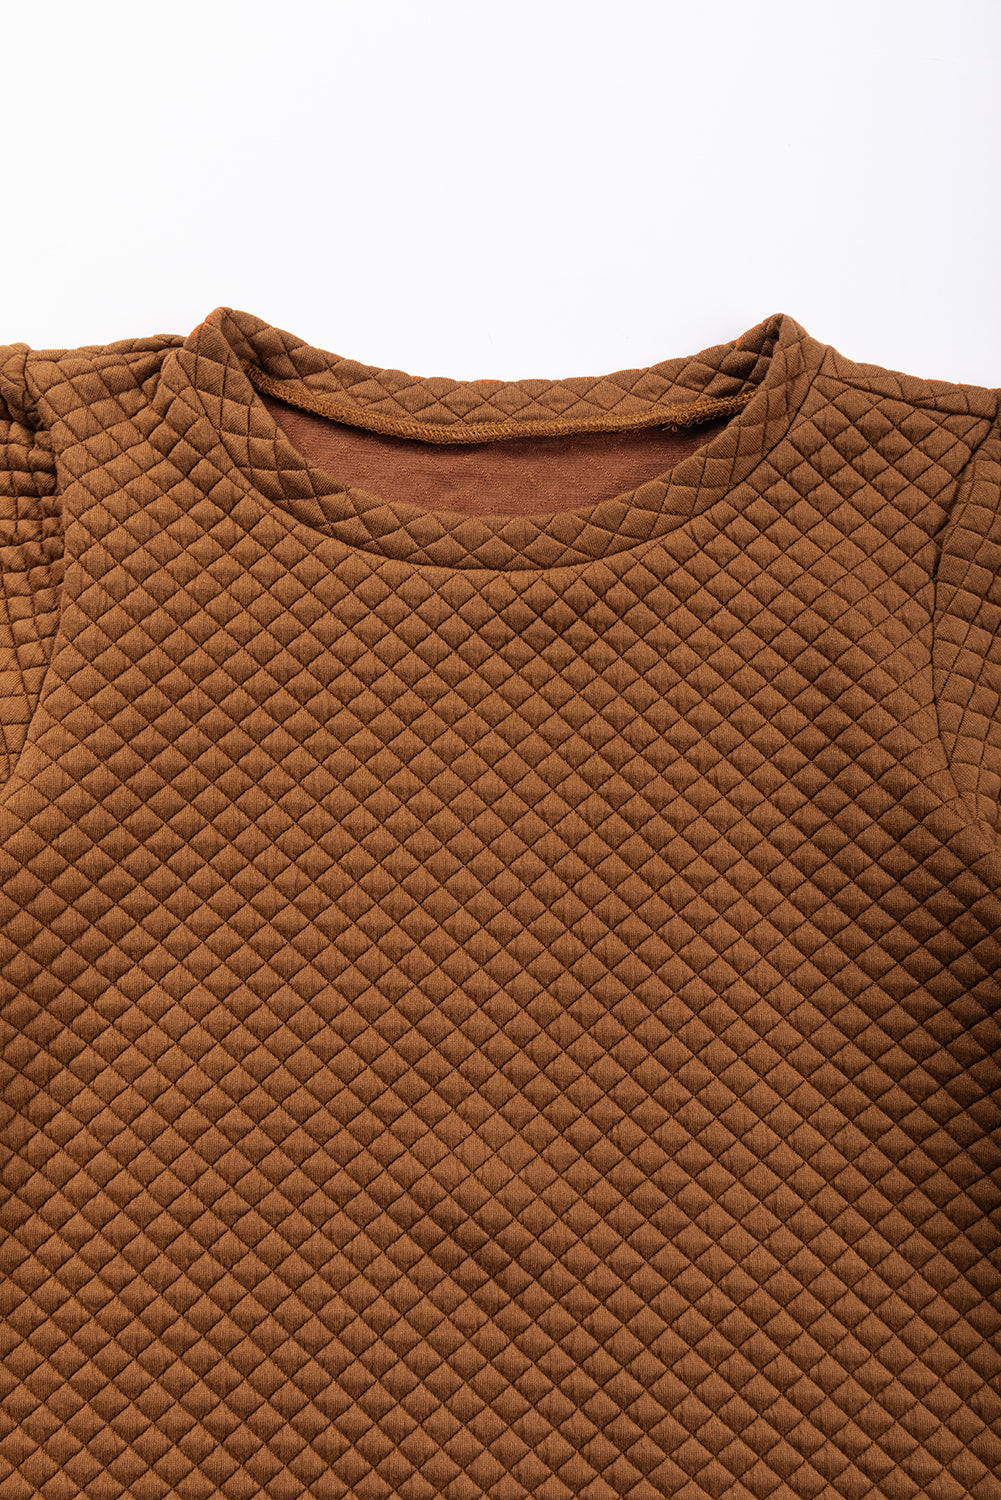 Smeđi jednobojni prošiveni pulover s puf rukavima